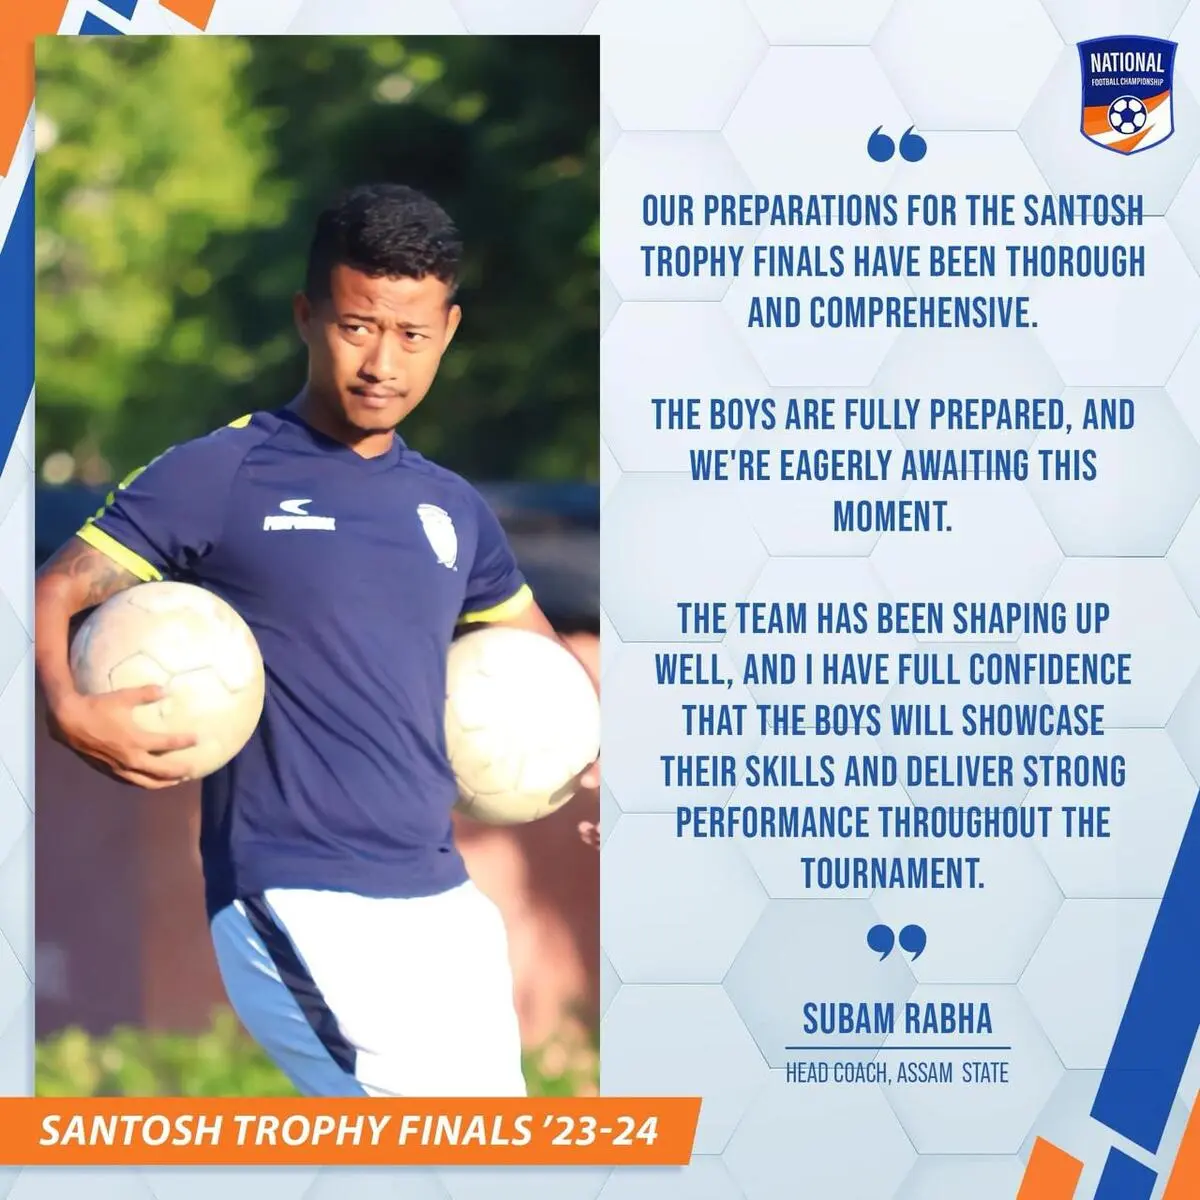 2023-24 Santosh Trophy Assam Schedule